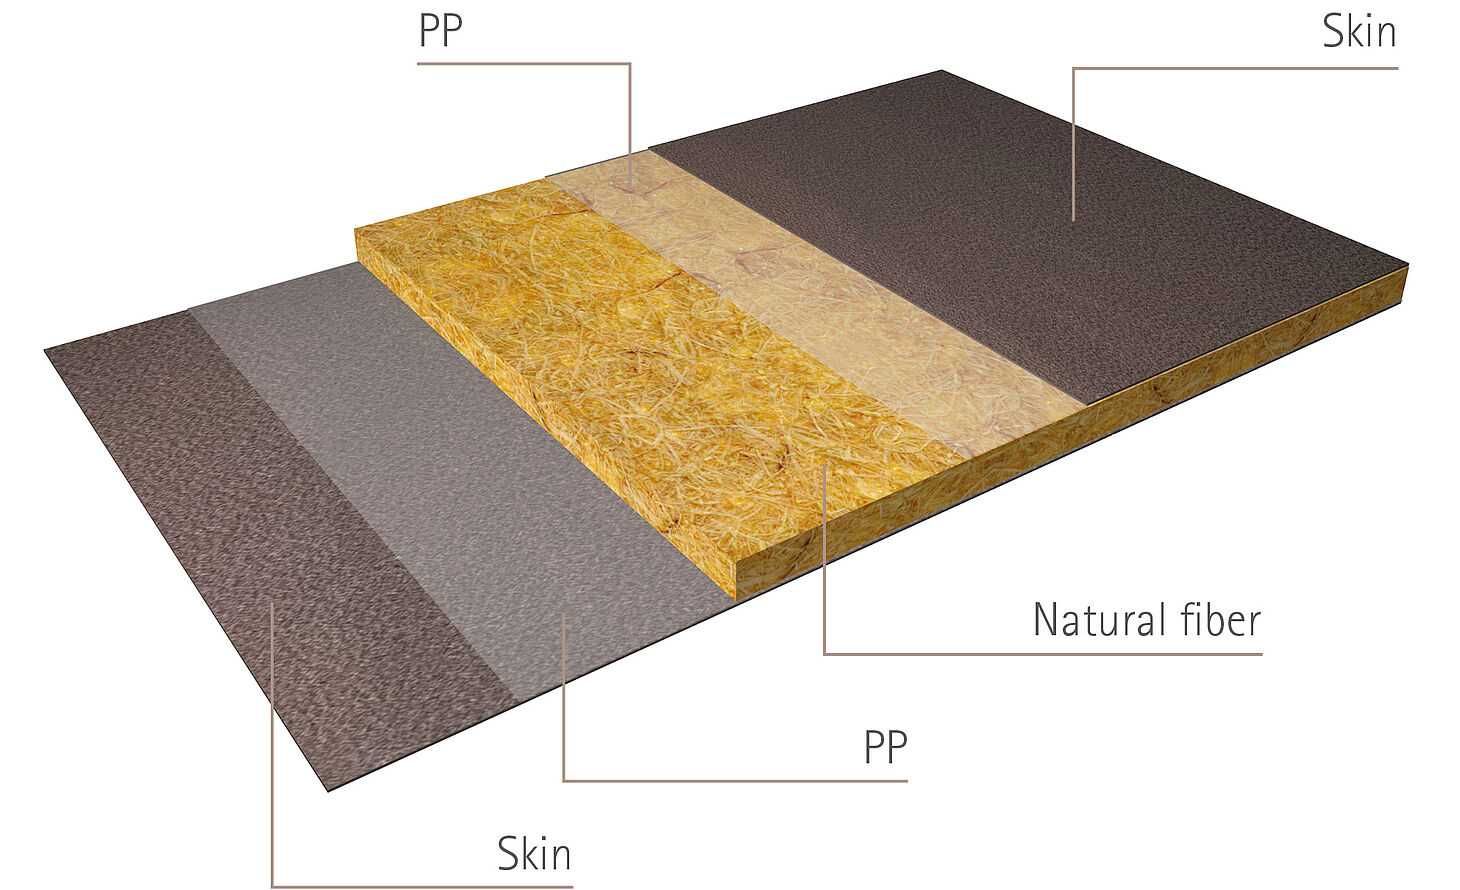 древесно-пластиковый композитный материал с разнообразным полимерным или натуральным сырьем